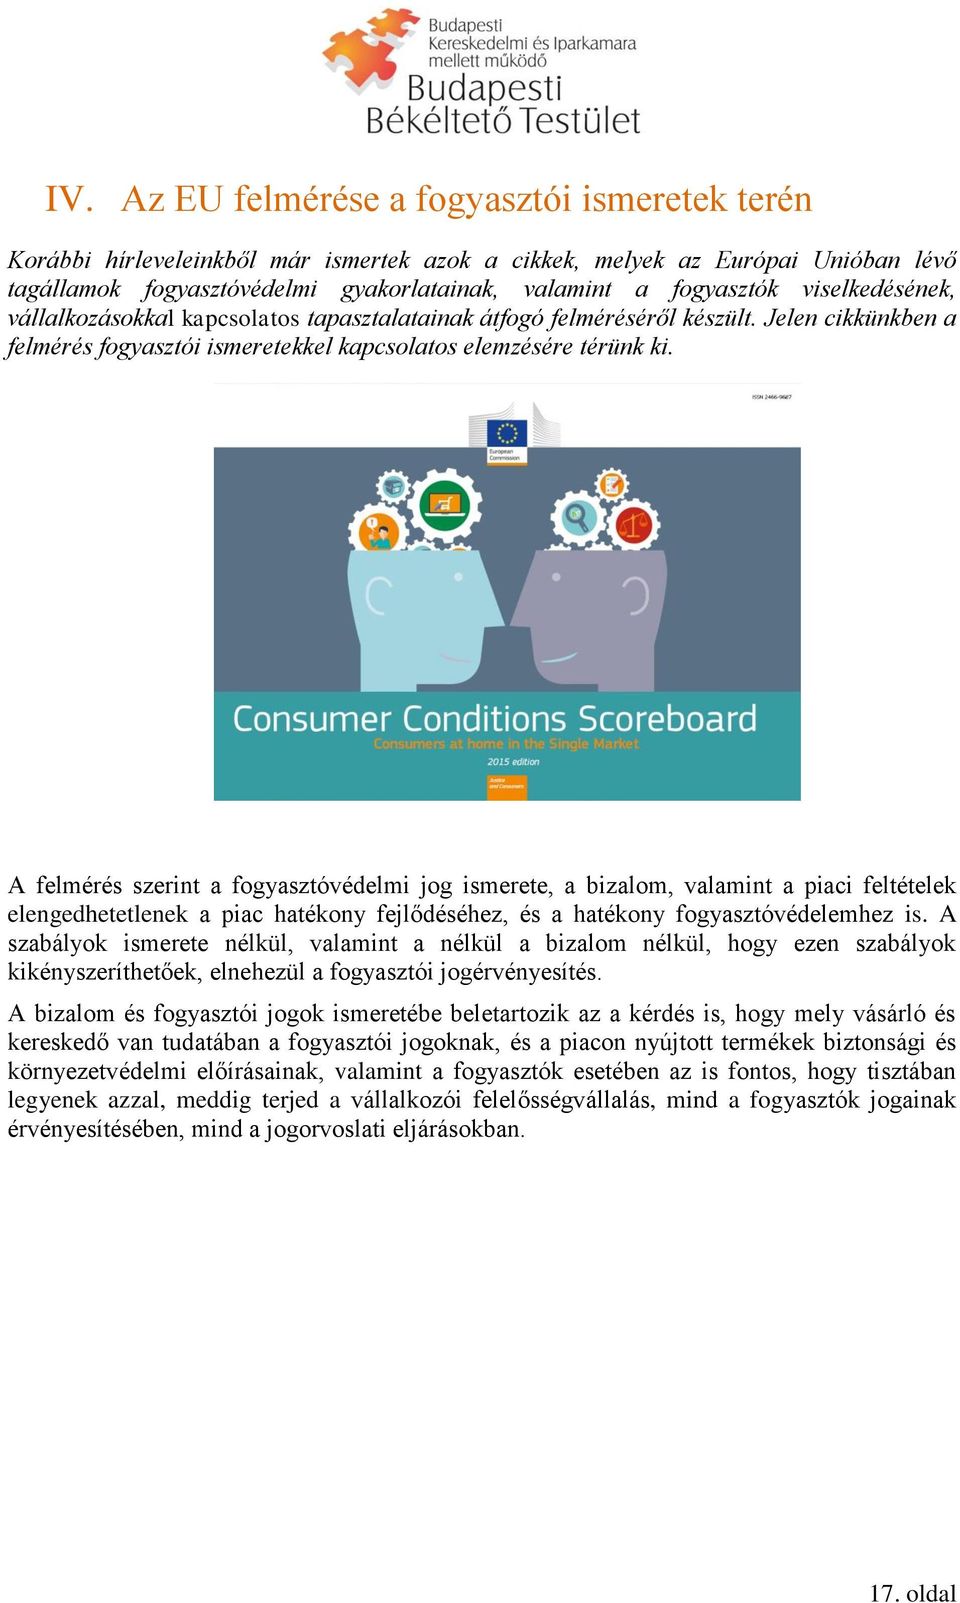 A felmérés szerint a fogyasztóvédelmi jog ismerete, a bizalom, valamint a piaci feltételek elengedhetetlenek a piac hatékony fejlődéséhez, és a hatékony fogyasztóvédelemhez is.